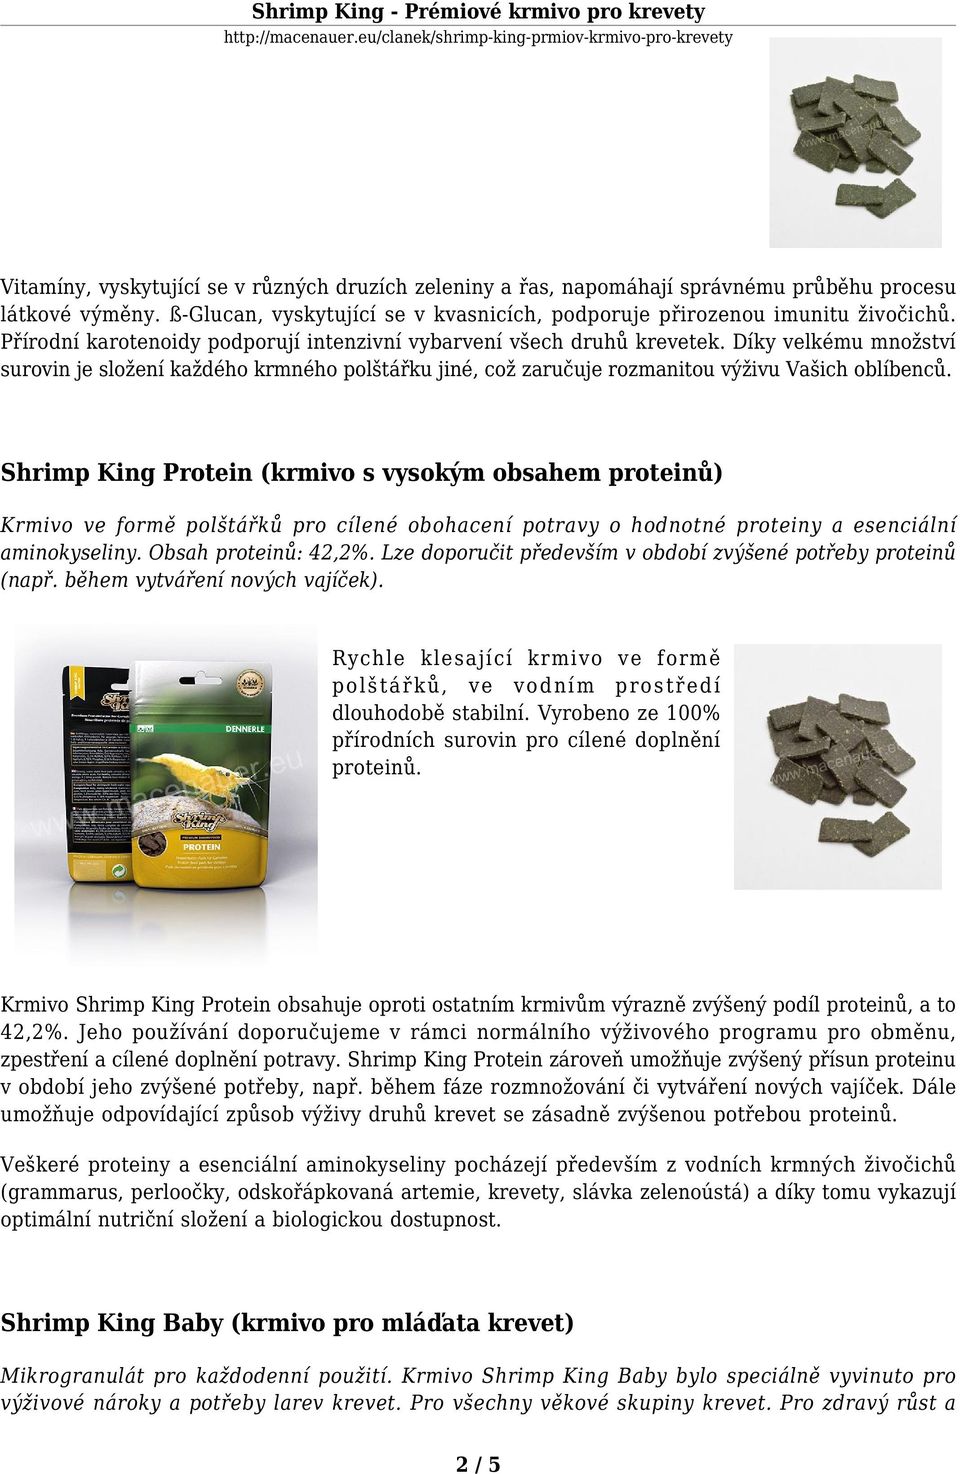 Shrimp King Protein (krmivo s vysokým obsahem proteinů) Krmivo ve formě polštářků pro cílené obohacení potravy o hodnotné proteiny a esenciální aminokyseliny. Obsah proteinů: 42,2%.